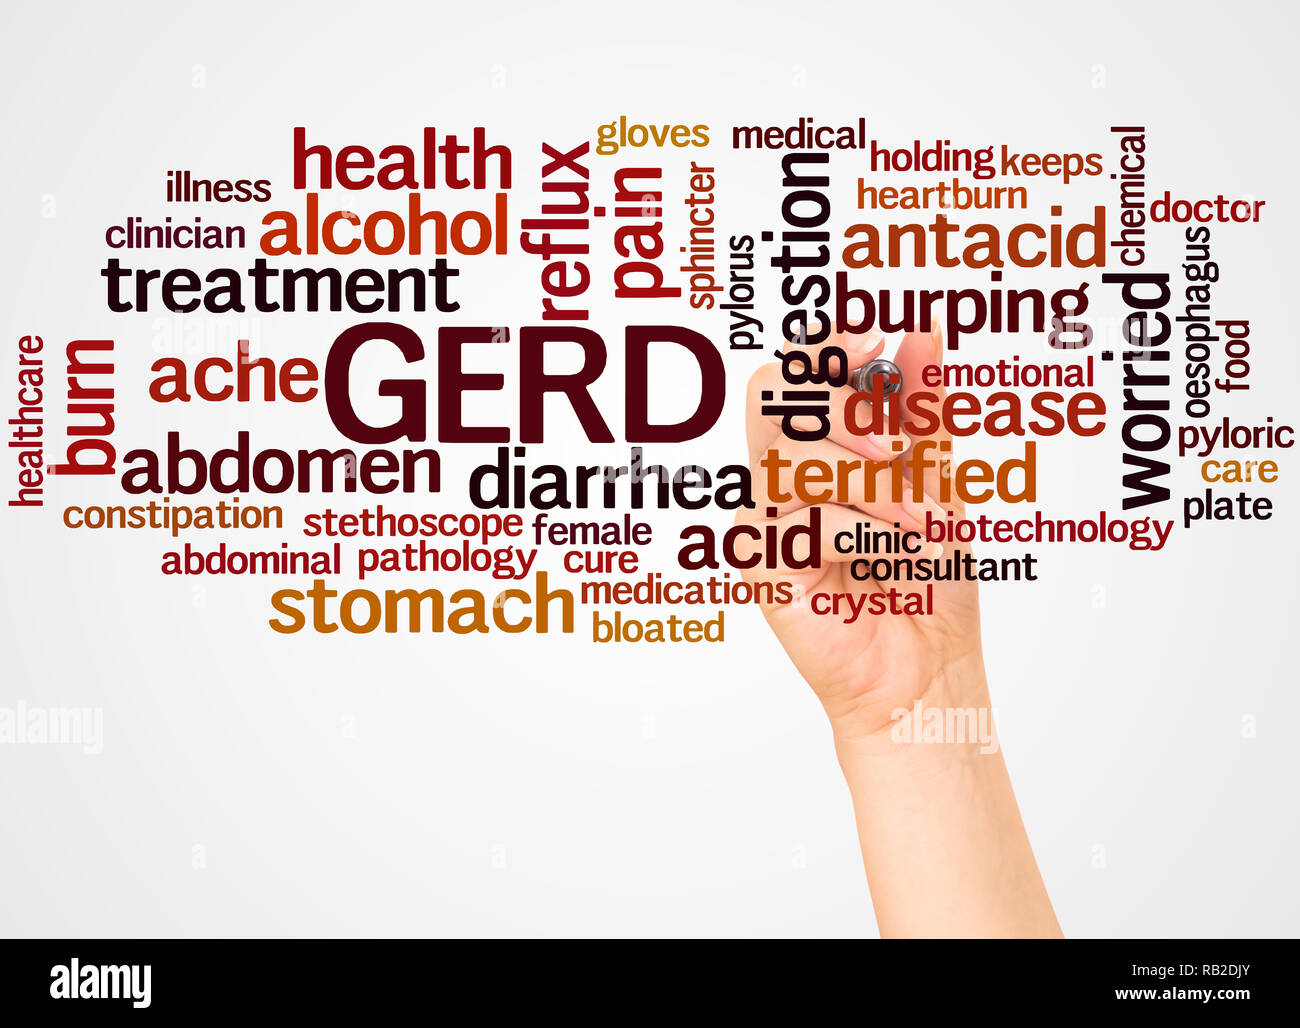 GERD - gastroösophageale Refluxkrankheit, Word cloud und Hand mit Marker Konzept auf weißem Hintergrund. Stockfoto